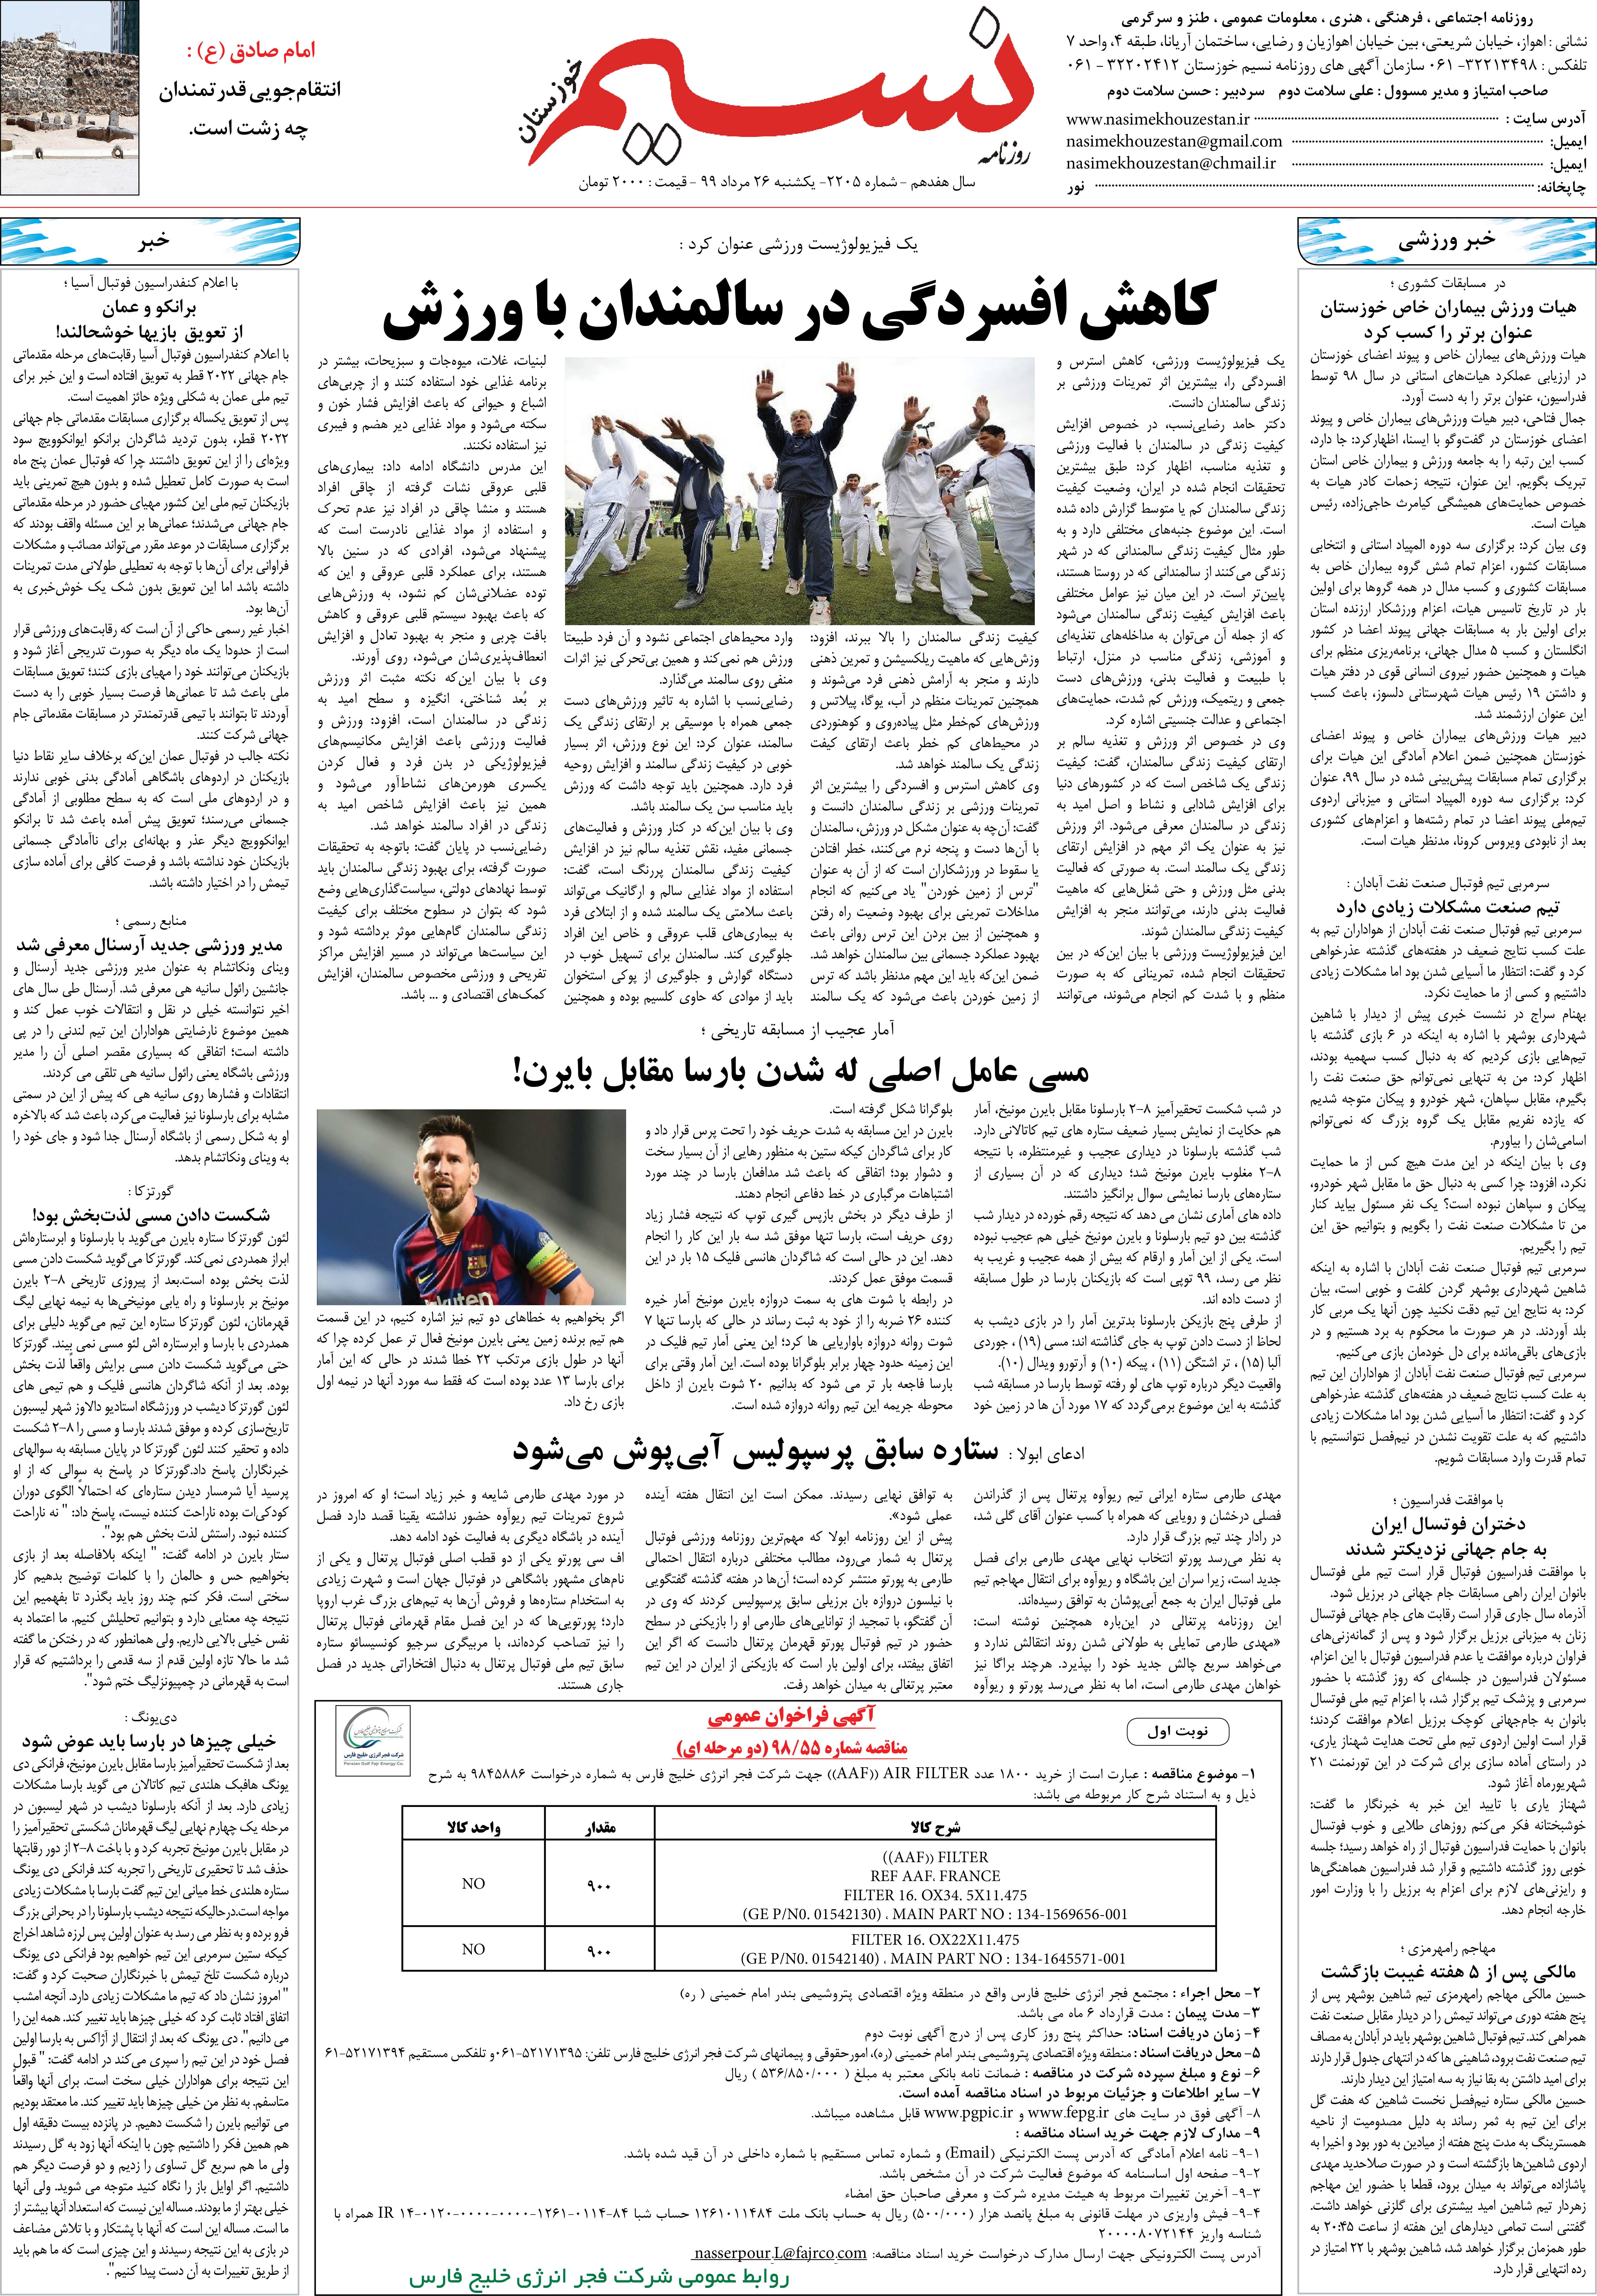 صفحه آخر روزنامه نسیم شماره 2205